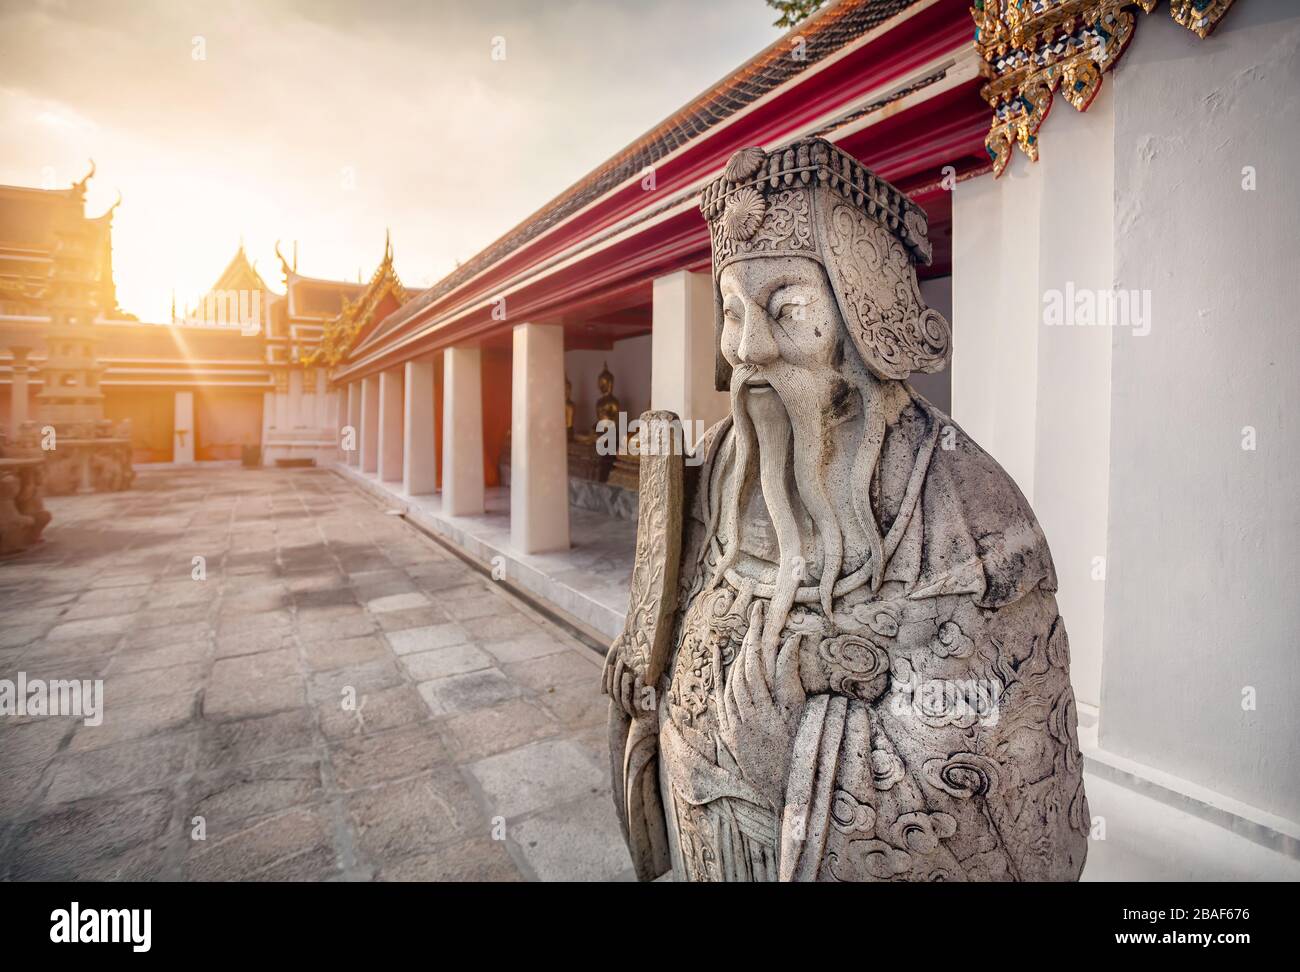 Statue en pierre de moine dans un temple bouddhiste Wat Pho à Bangkok, Thaïlande Banque D'Images